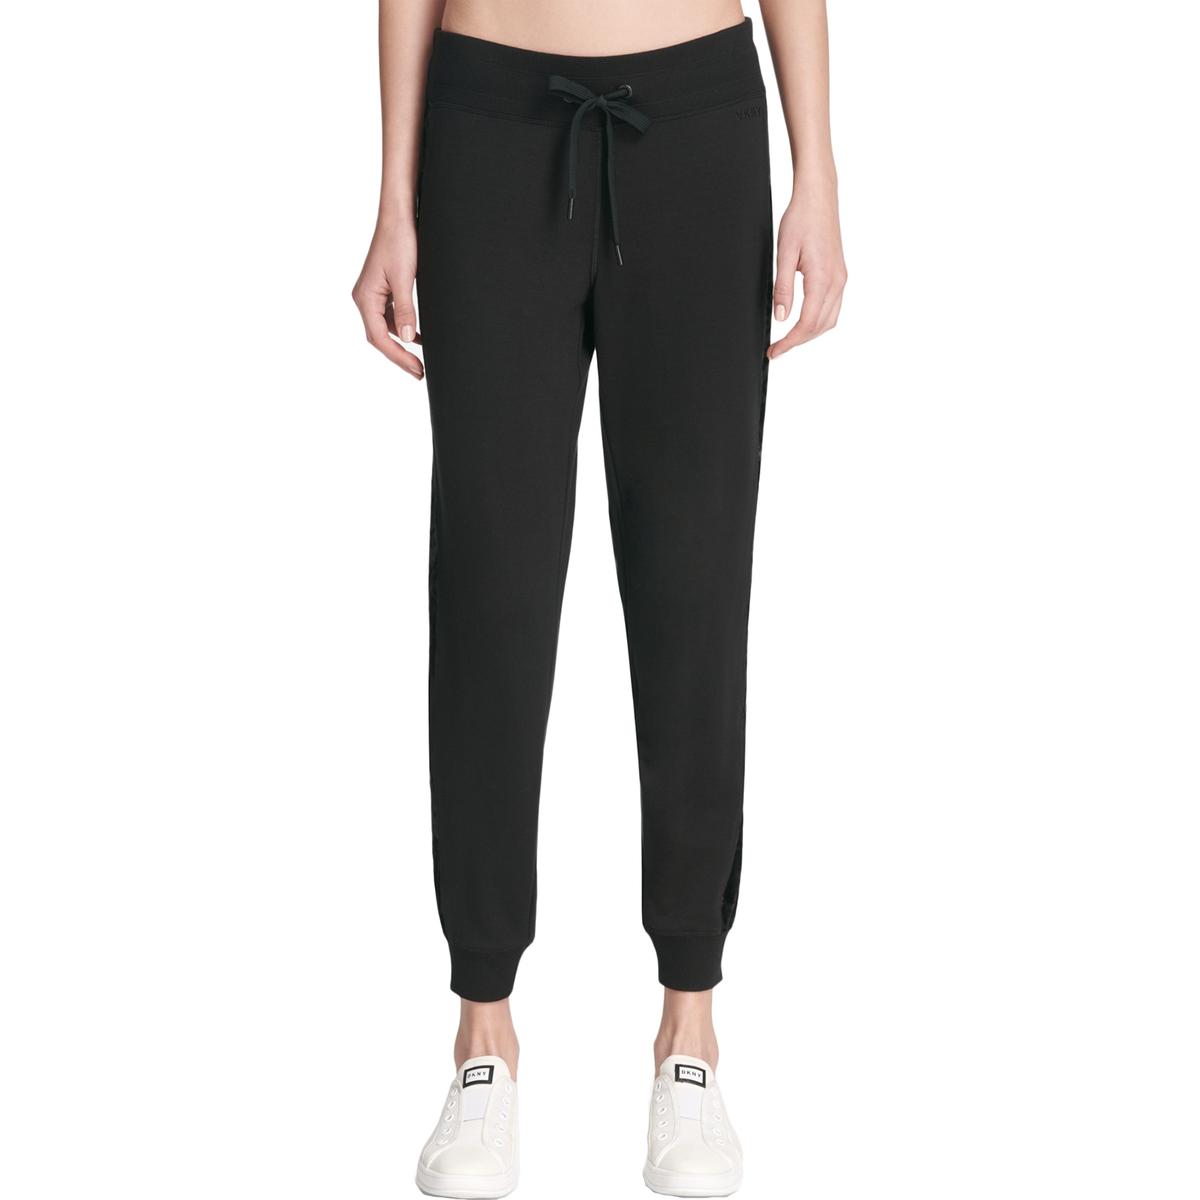 DKNY Womens Black Velvet Active Wear Fitness Jogger Pants Athletic XL ...